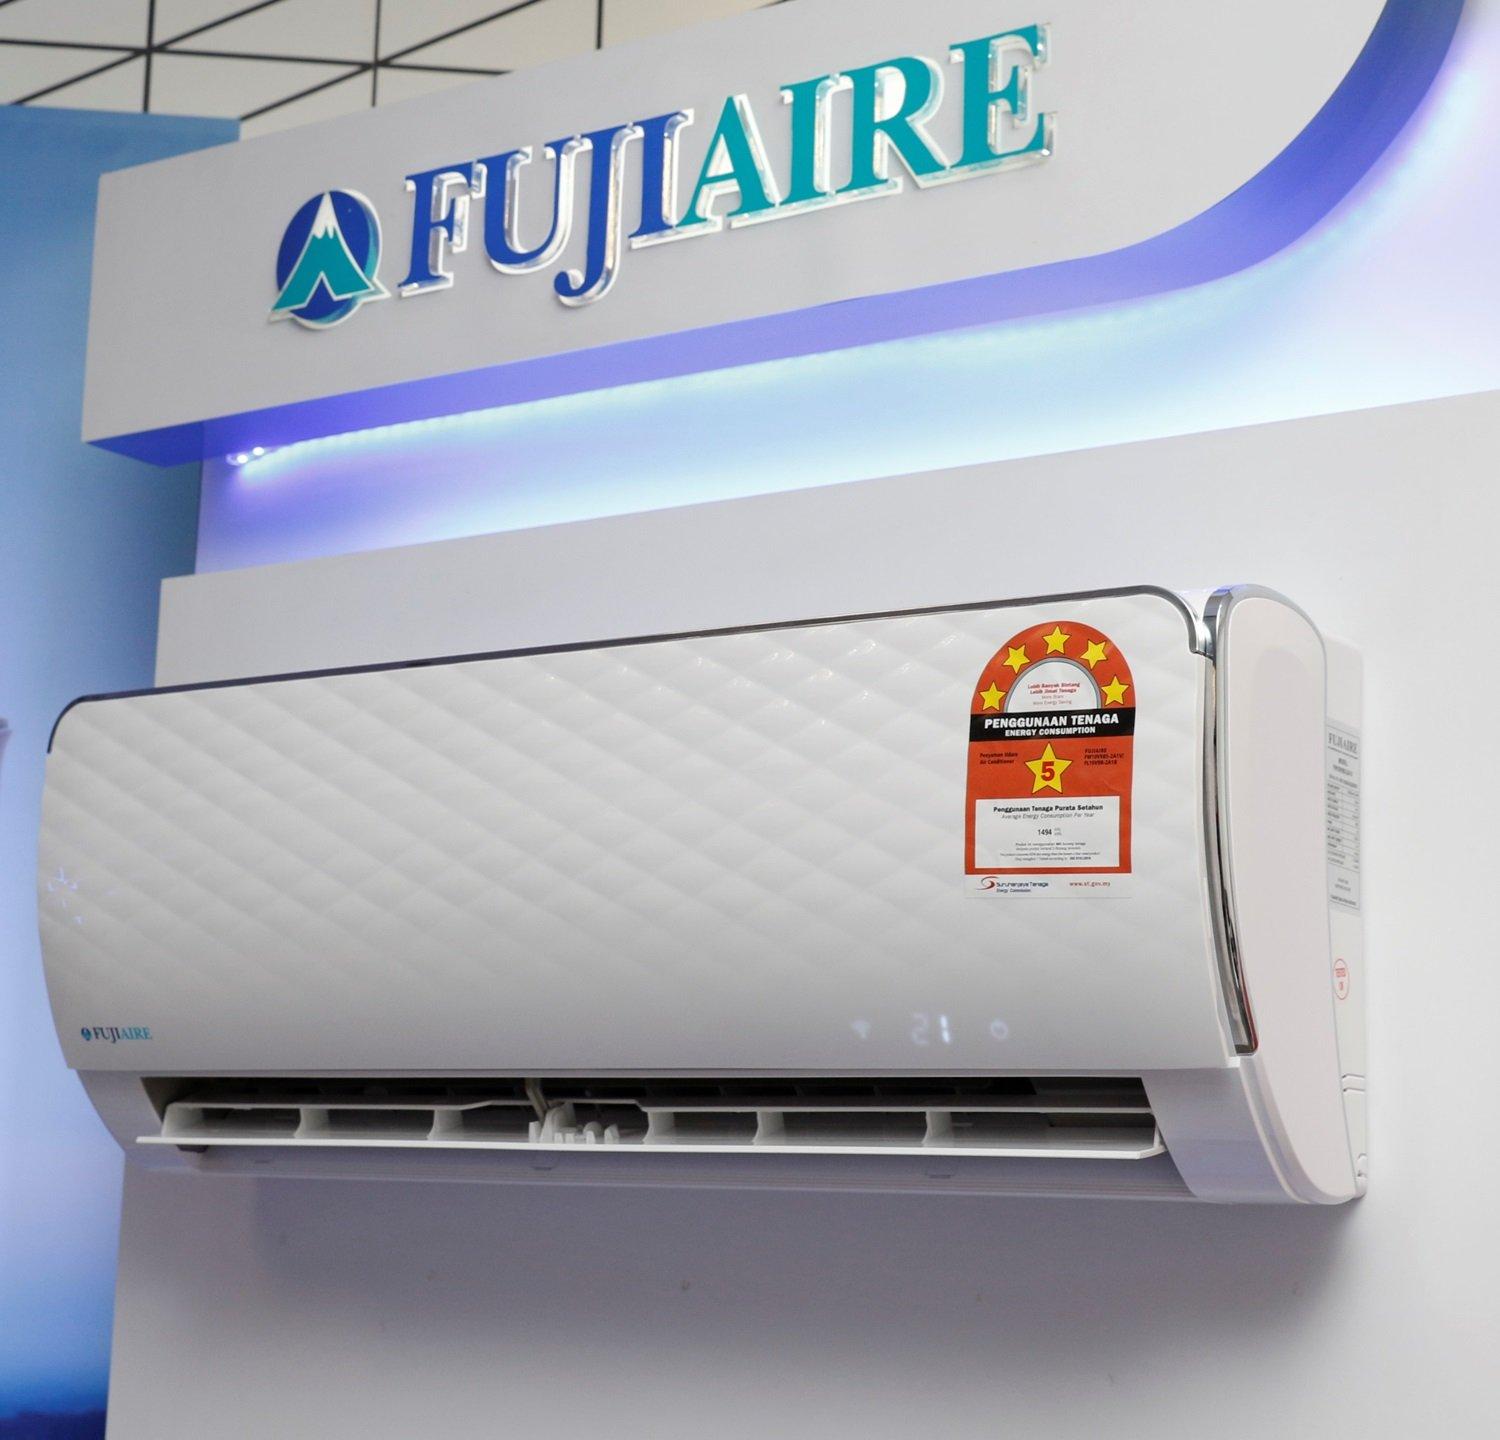 Máy lạnh Fujiaire thiết kế trắng đơn giản nhưng tinh tế